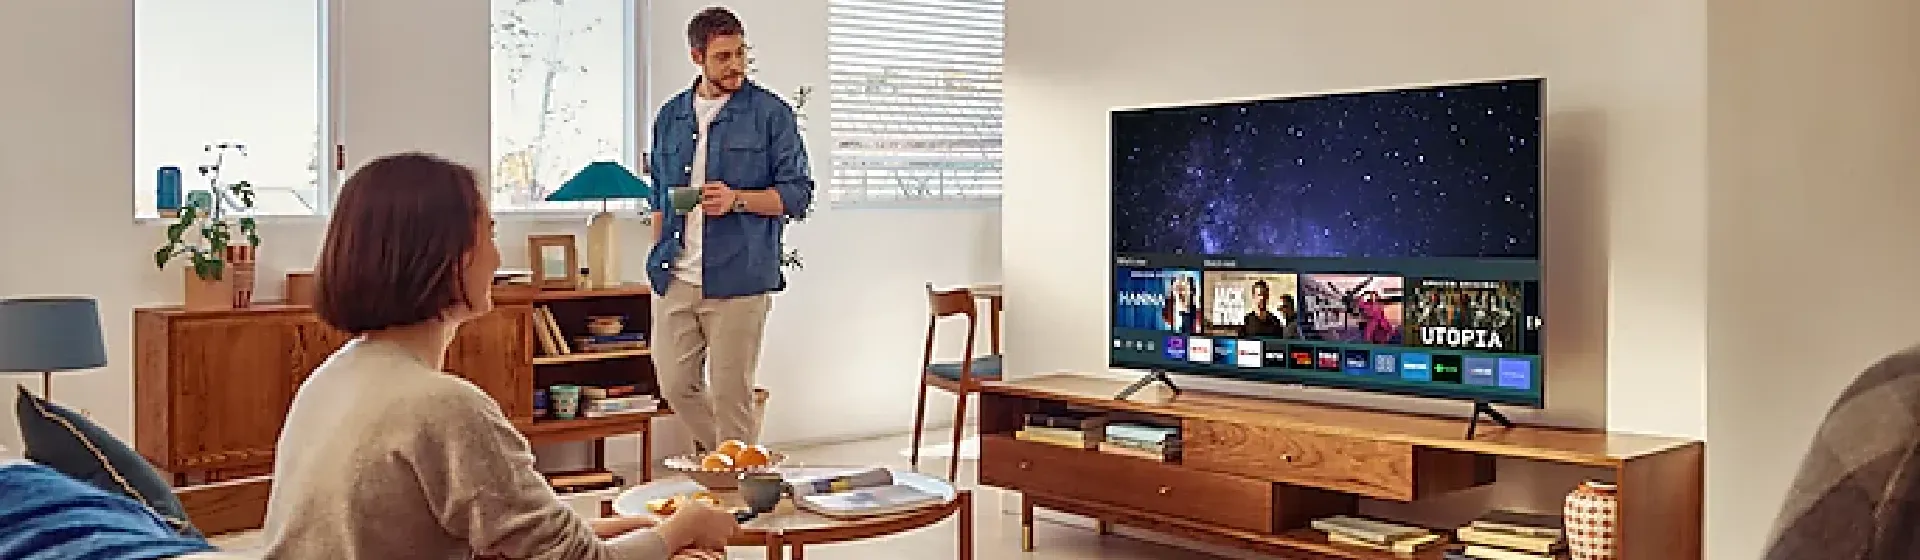 TV Samsung AU7700 sobre rack de madeira em sala de estar